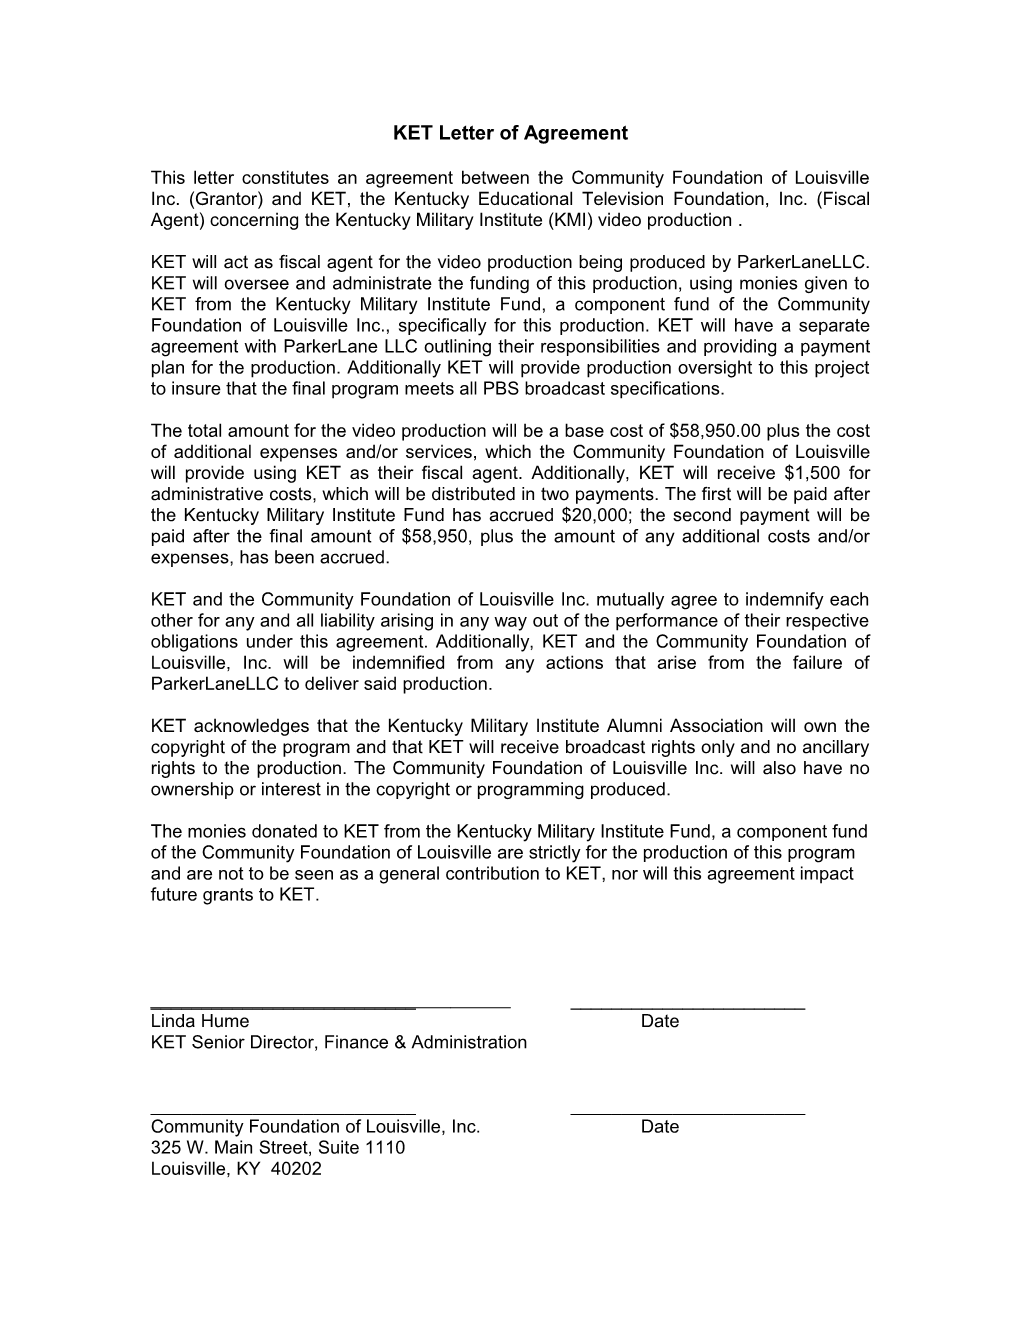 KET Programming Letter of Agreement